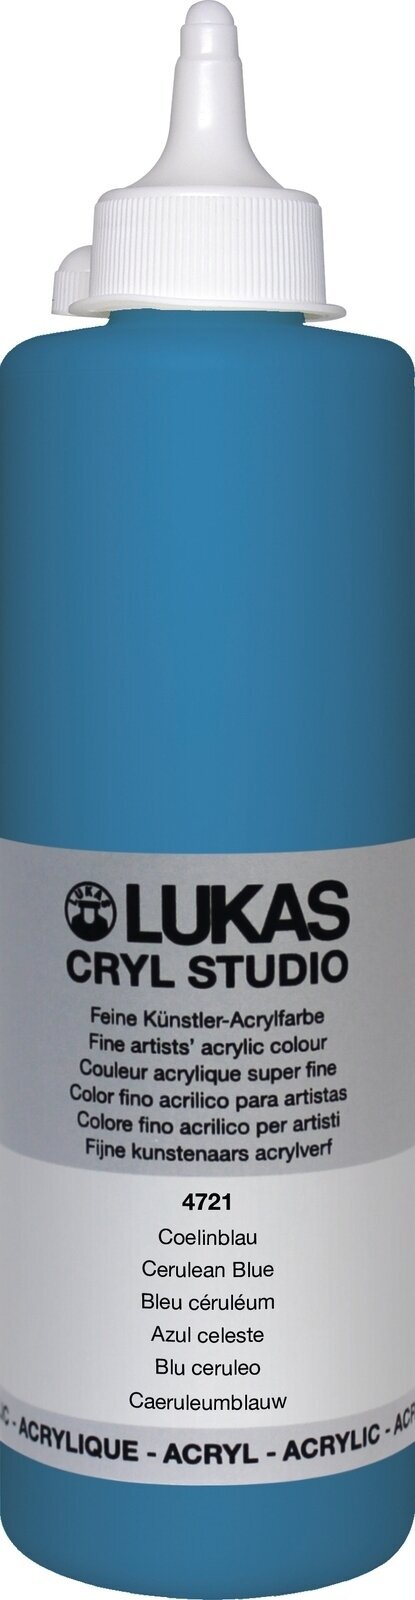 Akrilna barva Lukas Cryl Studio Akrilna barva 500 ml Cerulean Blue